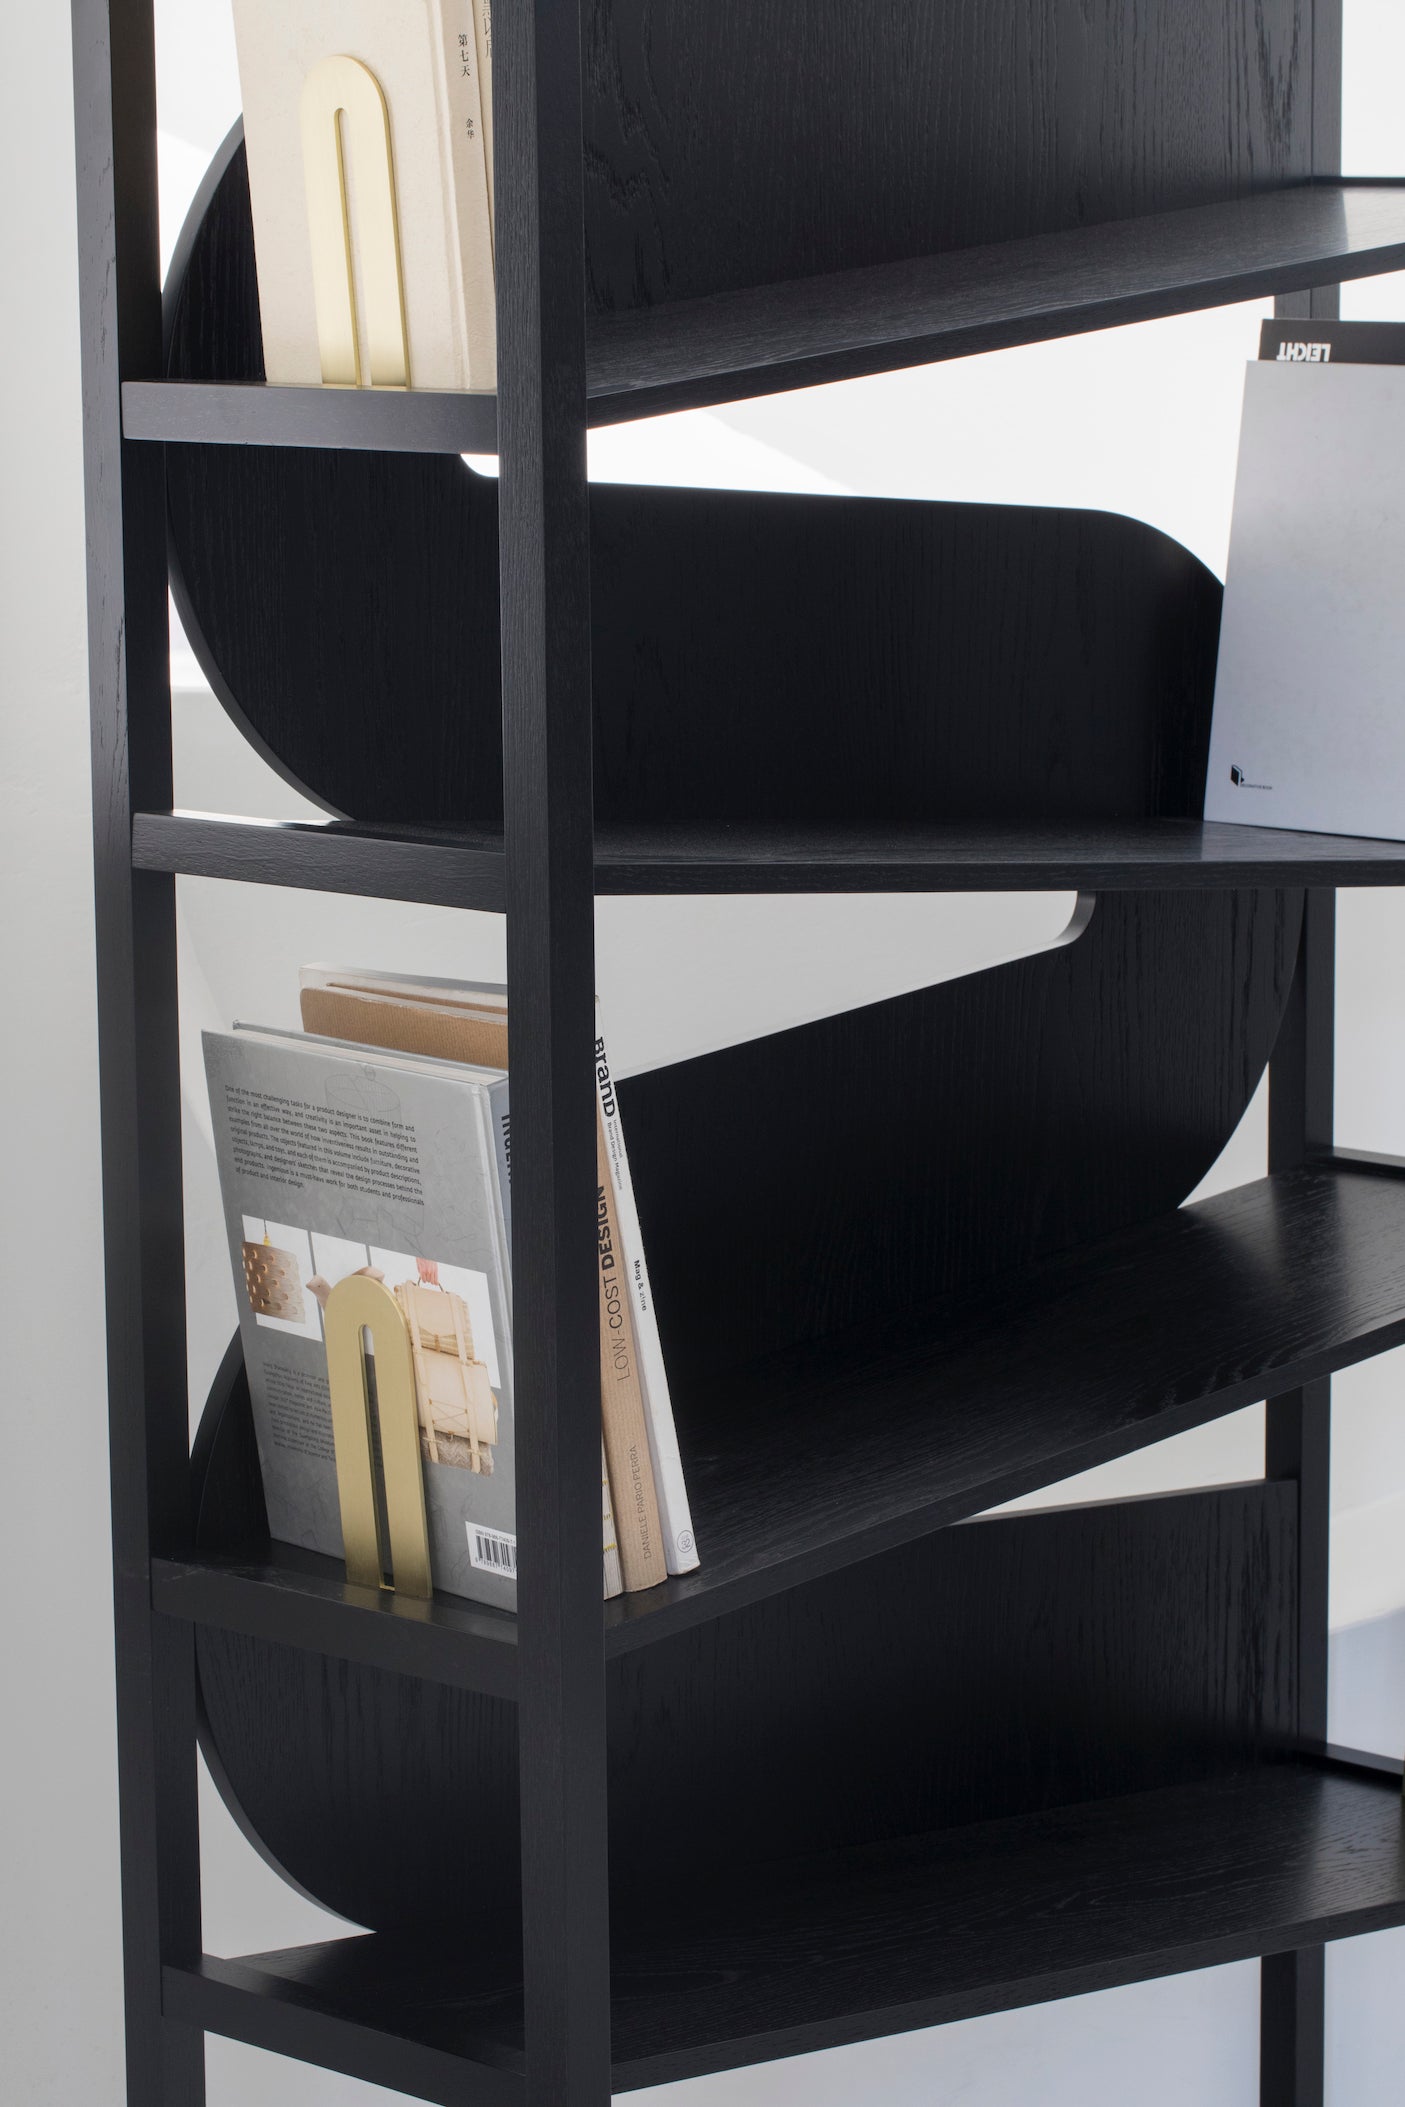 Arrangeable Bookshelf Bookcase / Cabinet ( Customer Made ) Ziinlife Modern Design Furniture Hong Kong Black